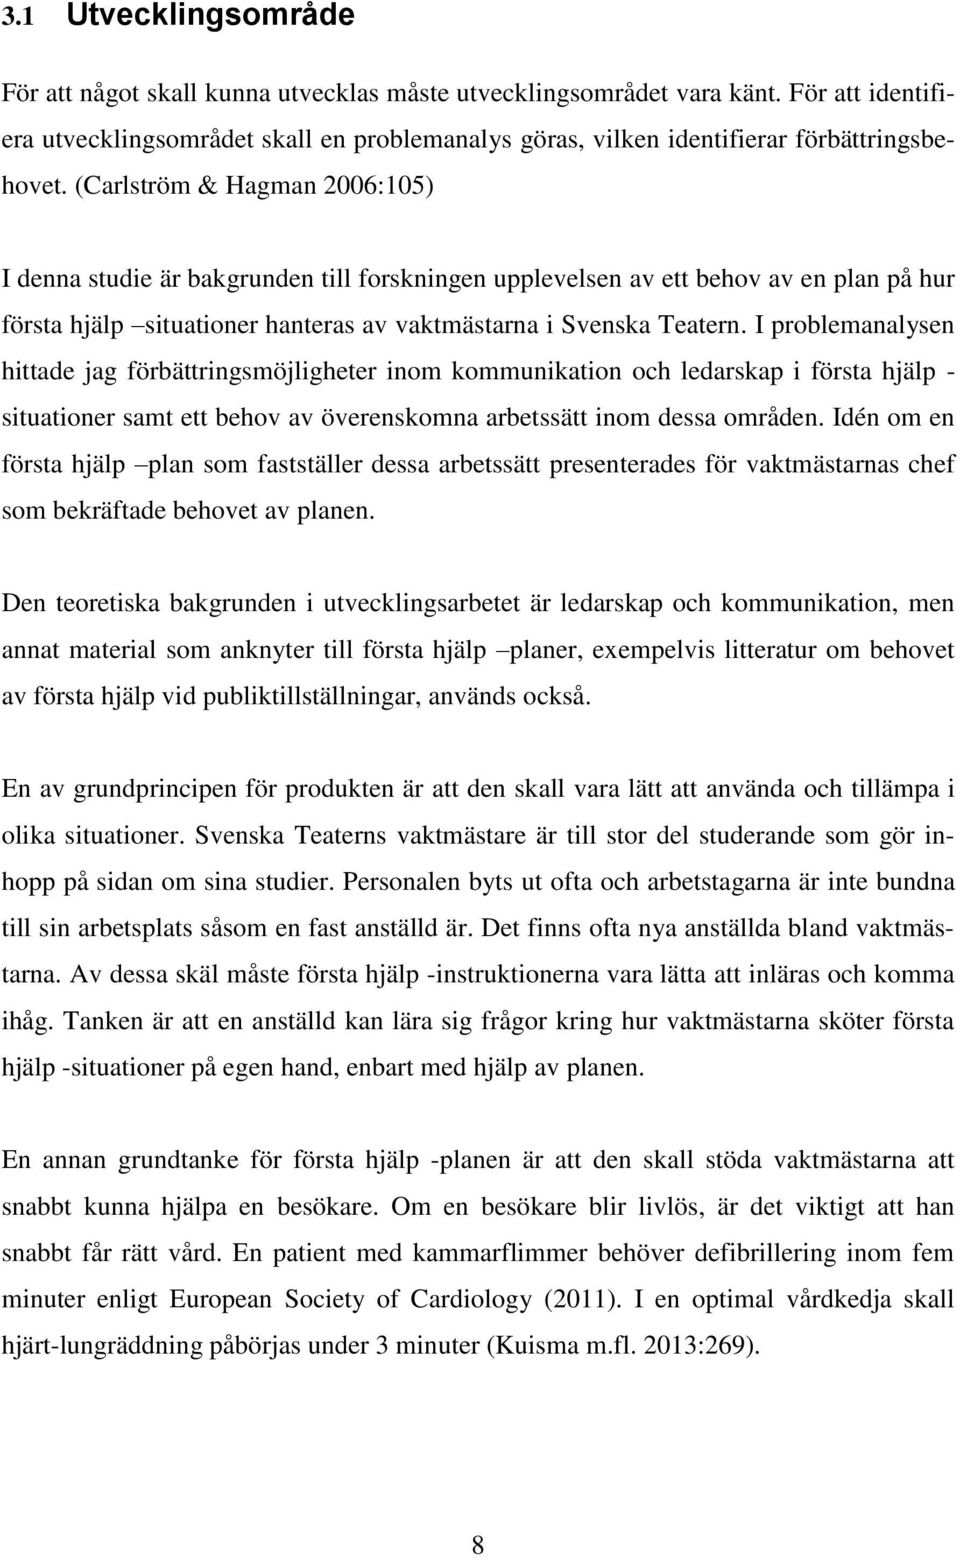 (Carlström & Hagman 2006:105) I denna studie är bakgrunden till forskningen upplevelsen av ett behov av en plan på hur första hjälp situationer hanteras av vaktmästarna i Svenska Teatern.